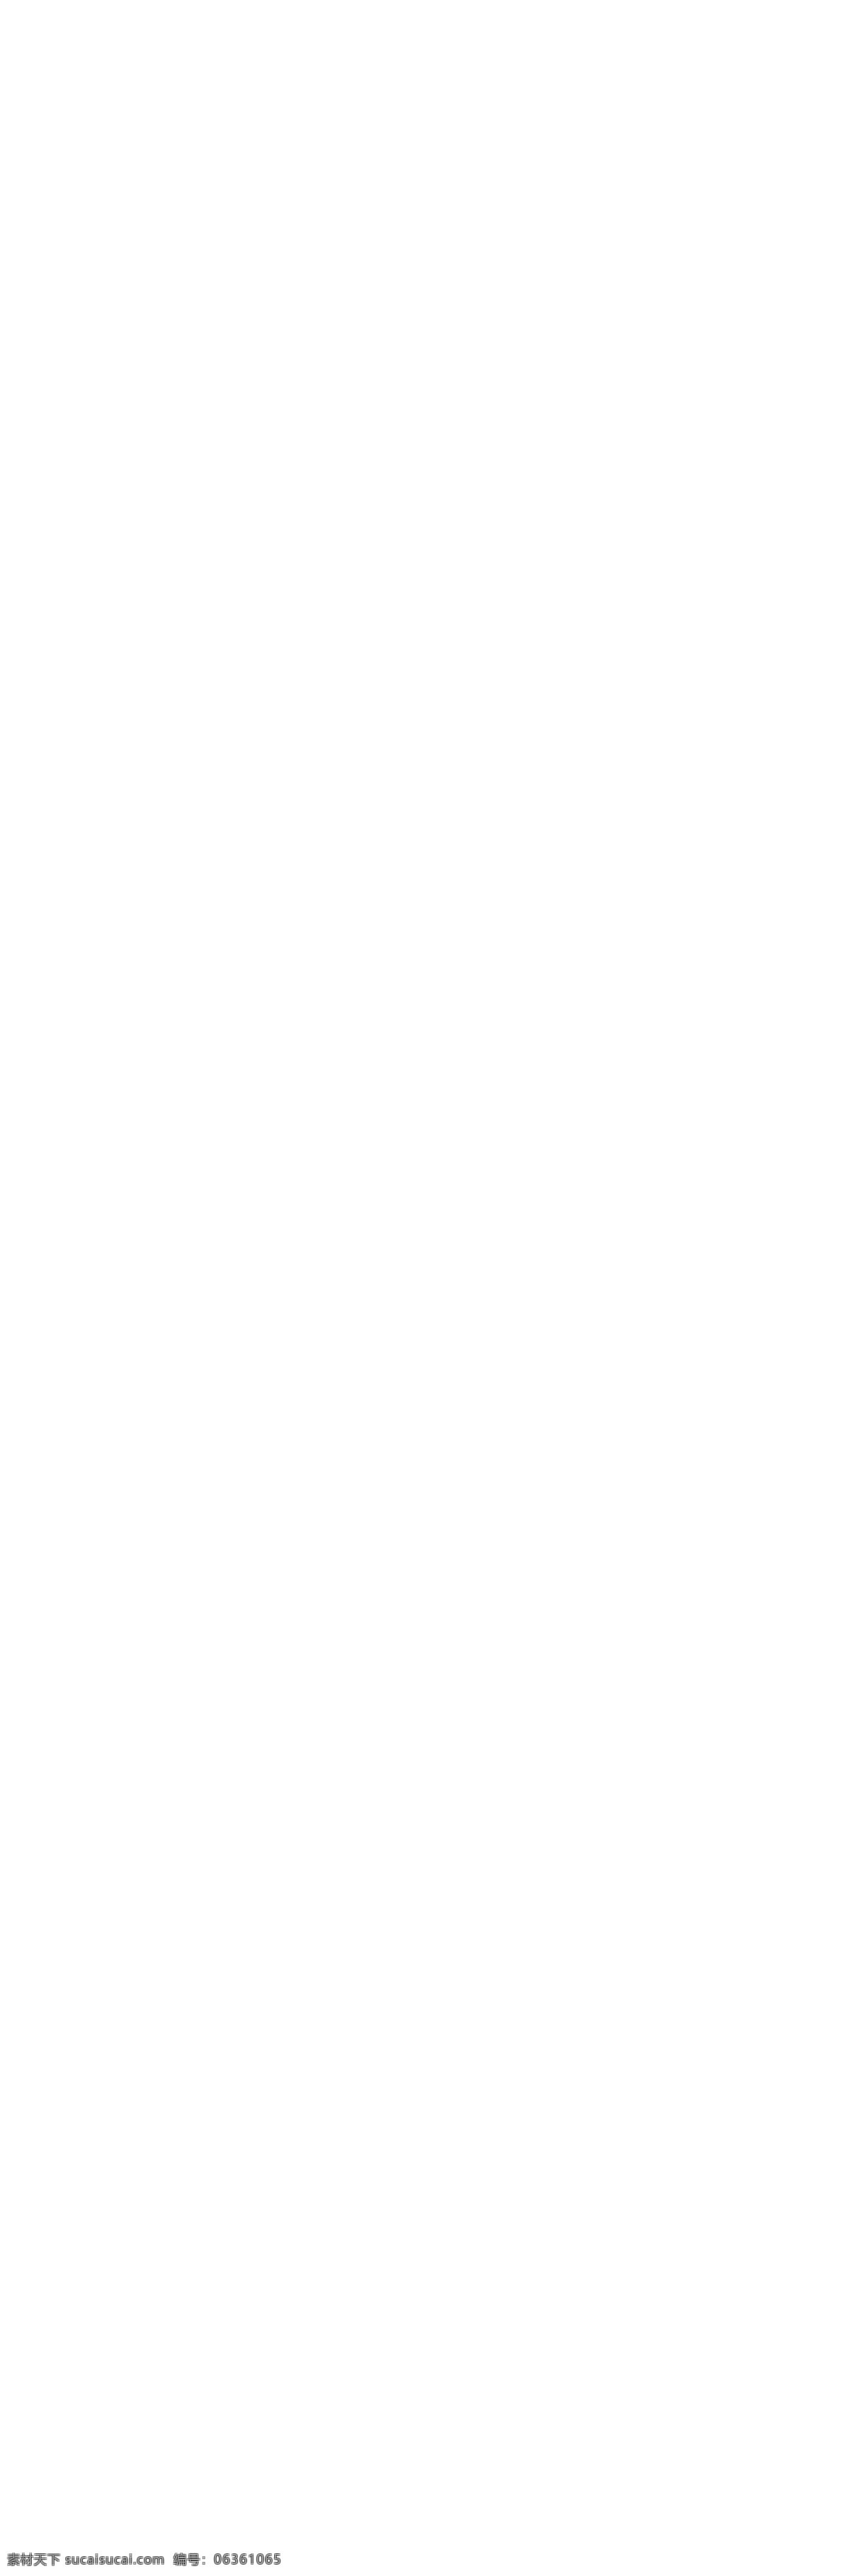 淘宝 金银 首饰 七夕 店面 装修 模板 产品展示 花边框 列表 情人节 活动 海报 神话 紫色 色彩背景图片 缘 祥云 梦幻 设计素材 淘宝素材 淘宝促销标签